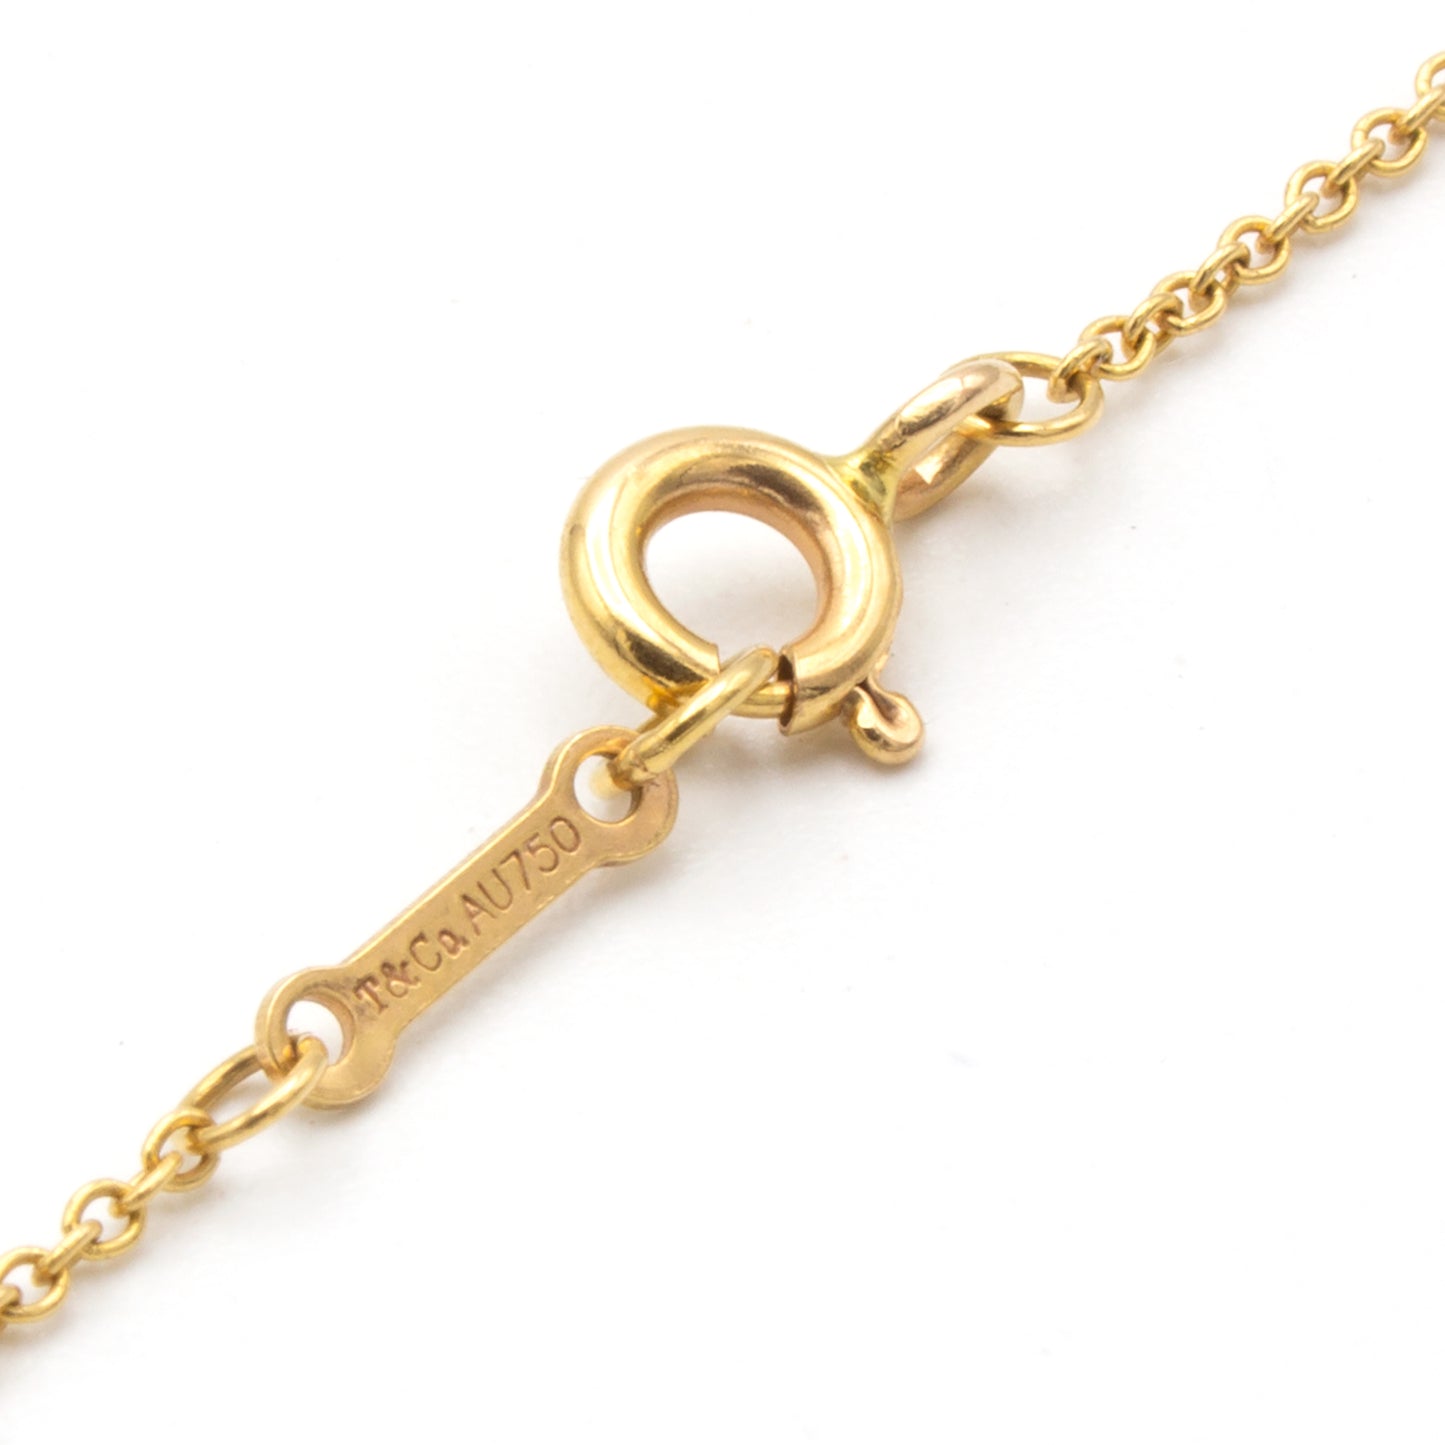 Tiffany & Co Double Loving Heart necklace